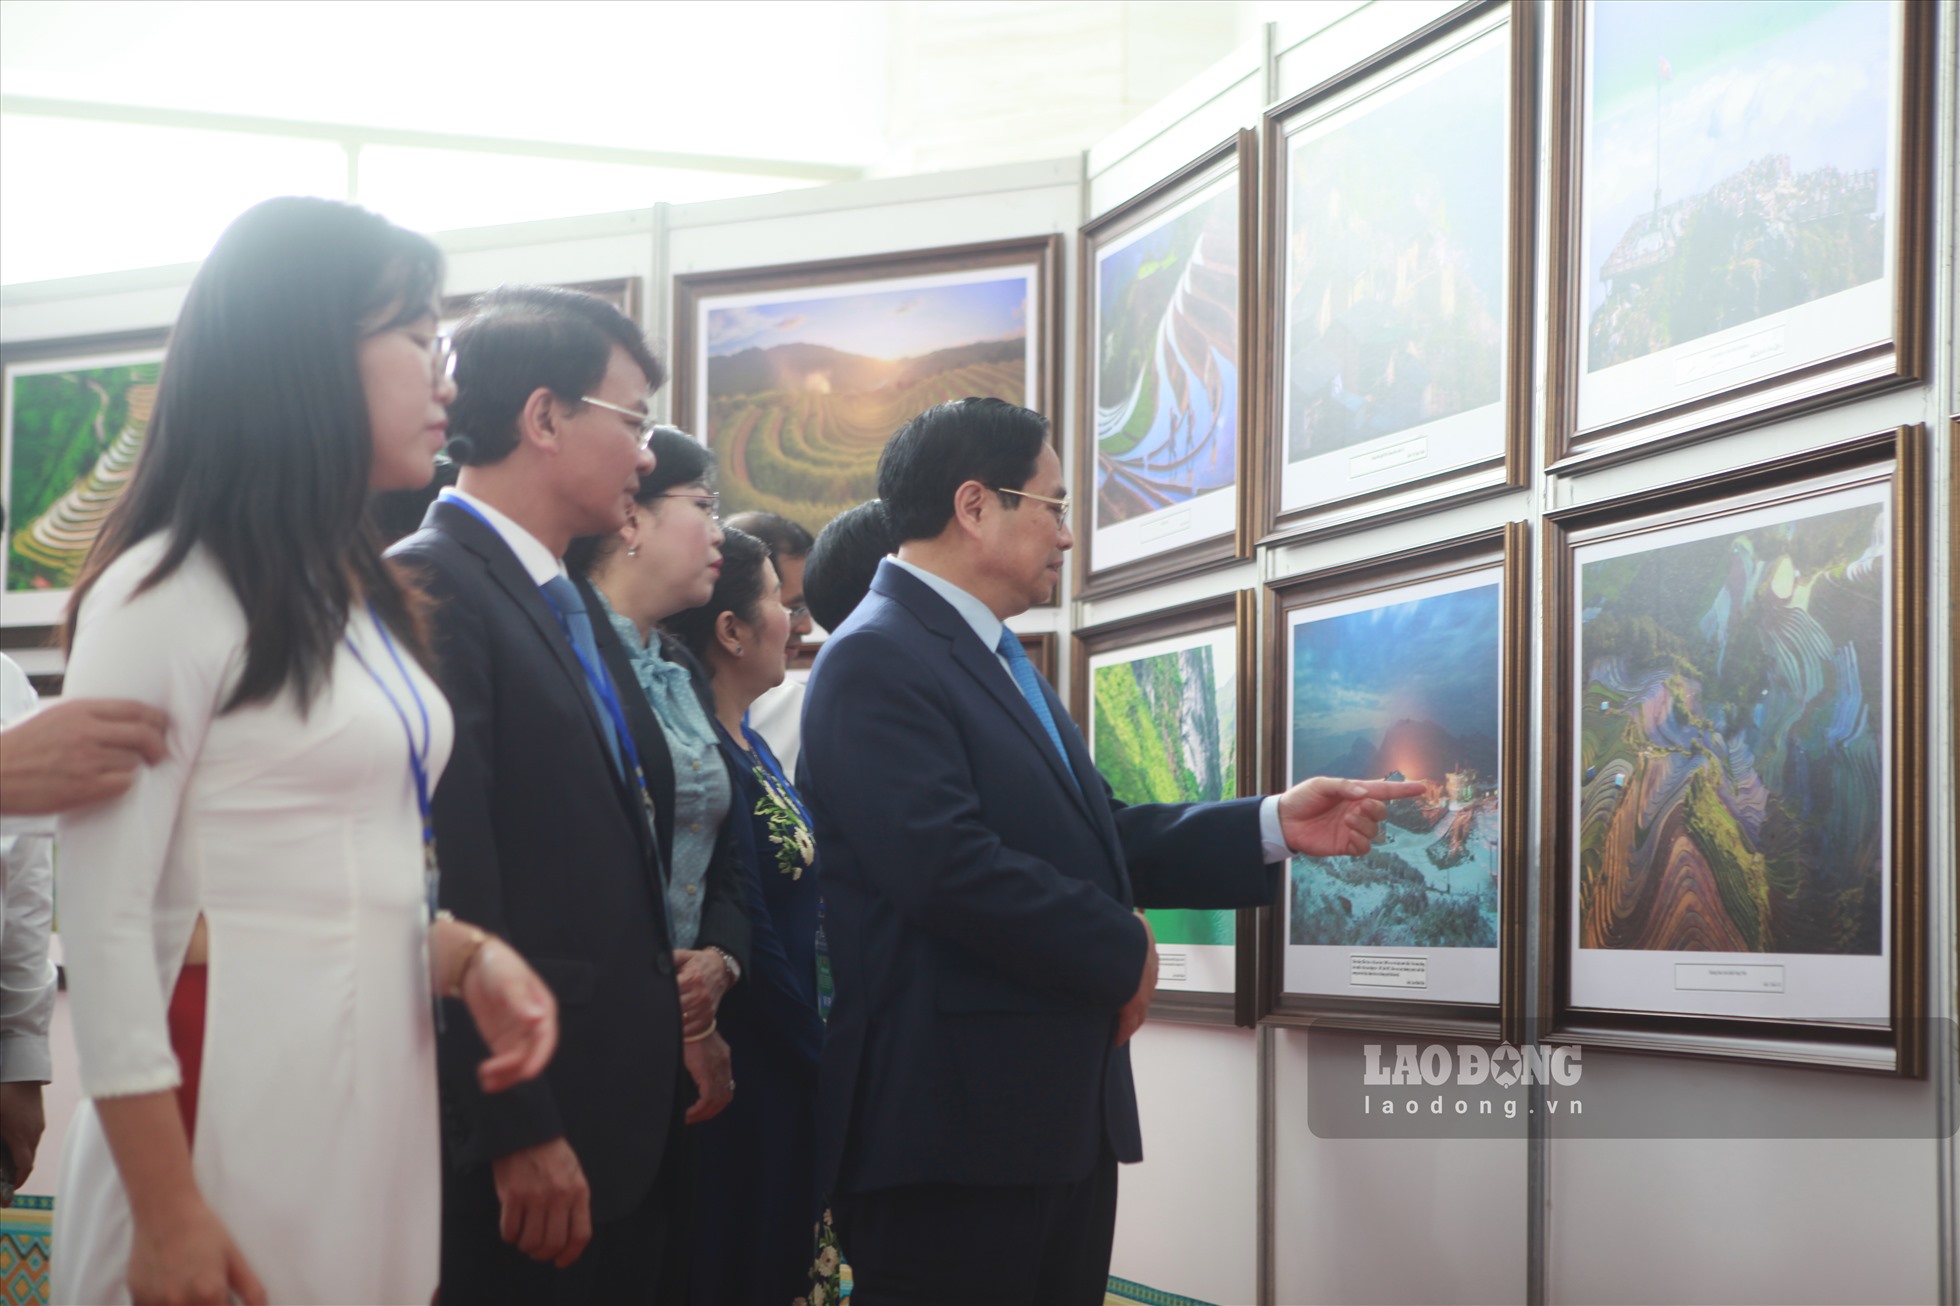 Thủ tướng chính phủ cùng đại biểu tham quan triển lãm ảnh.